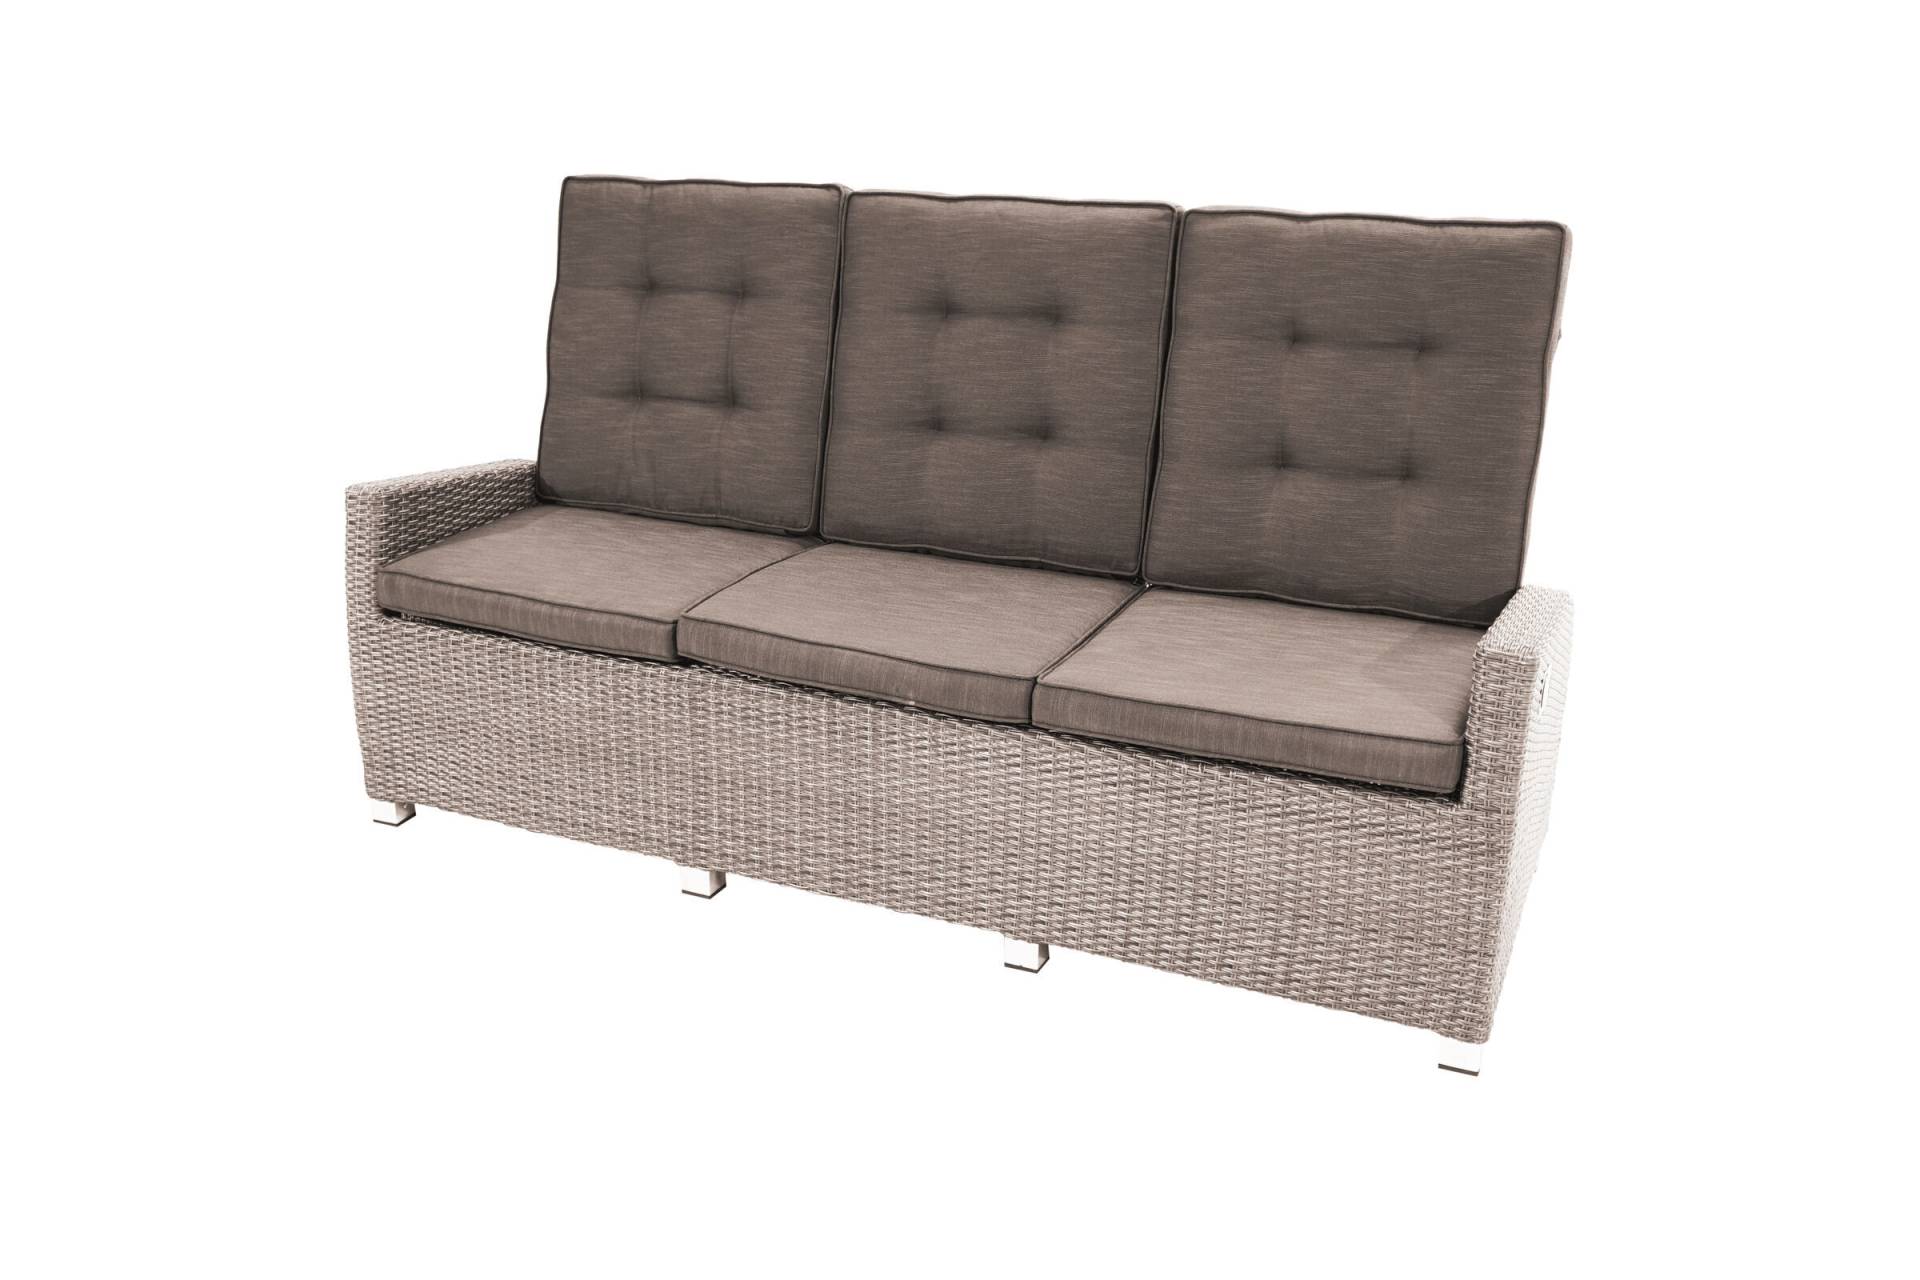 Ploß Nizza Comfort 3-Sitzer Speise-/Lounge-Sofa, champagner-meliert, Geflecht, 210x85x112 cm, verstellbar, inkl. Polster von Ploß